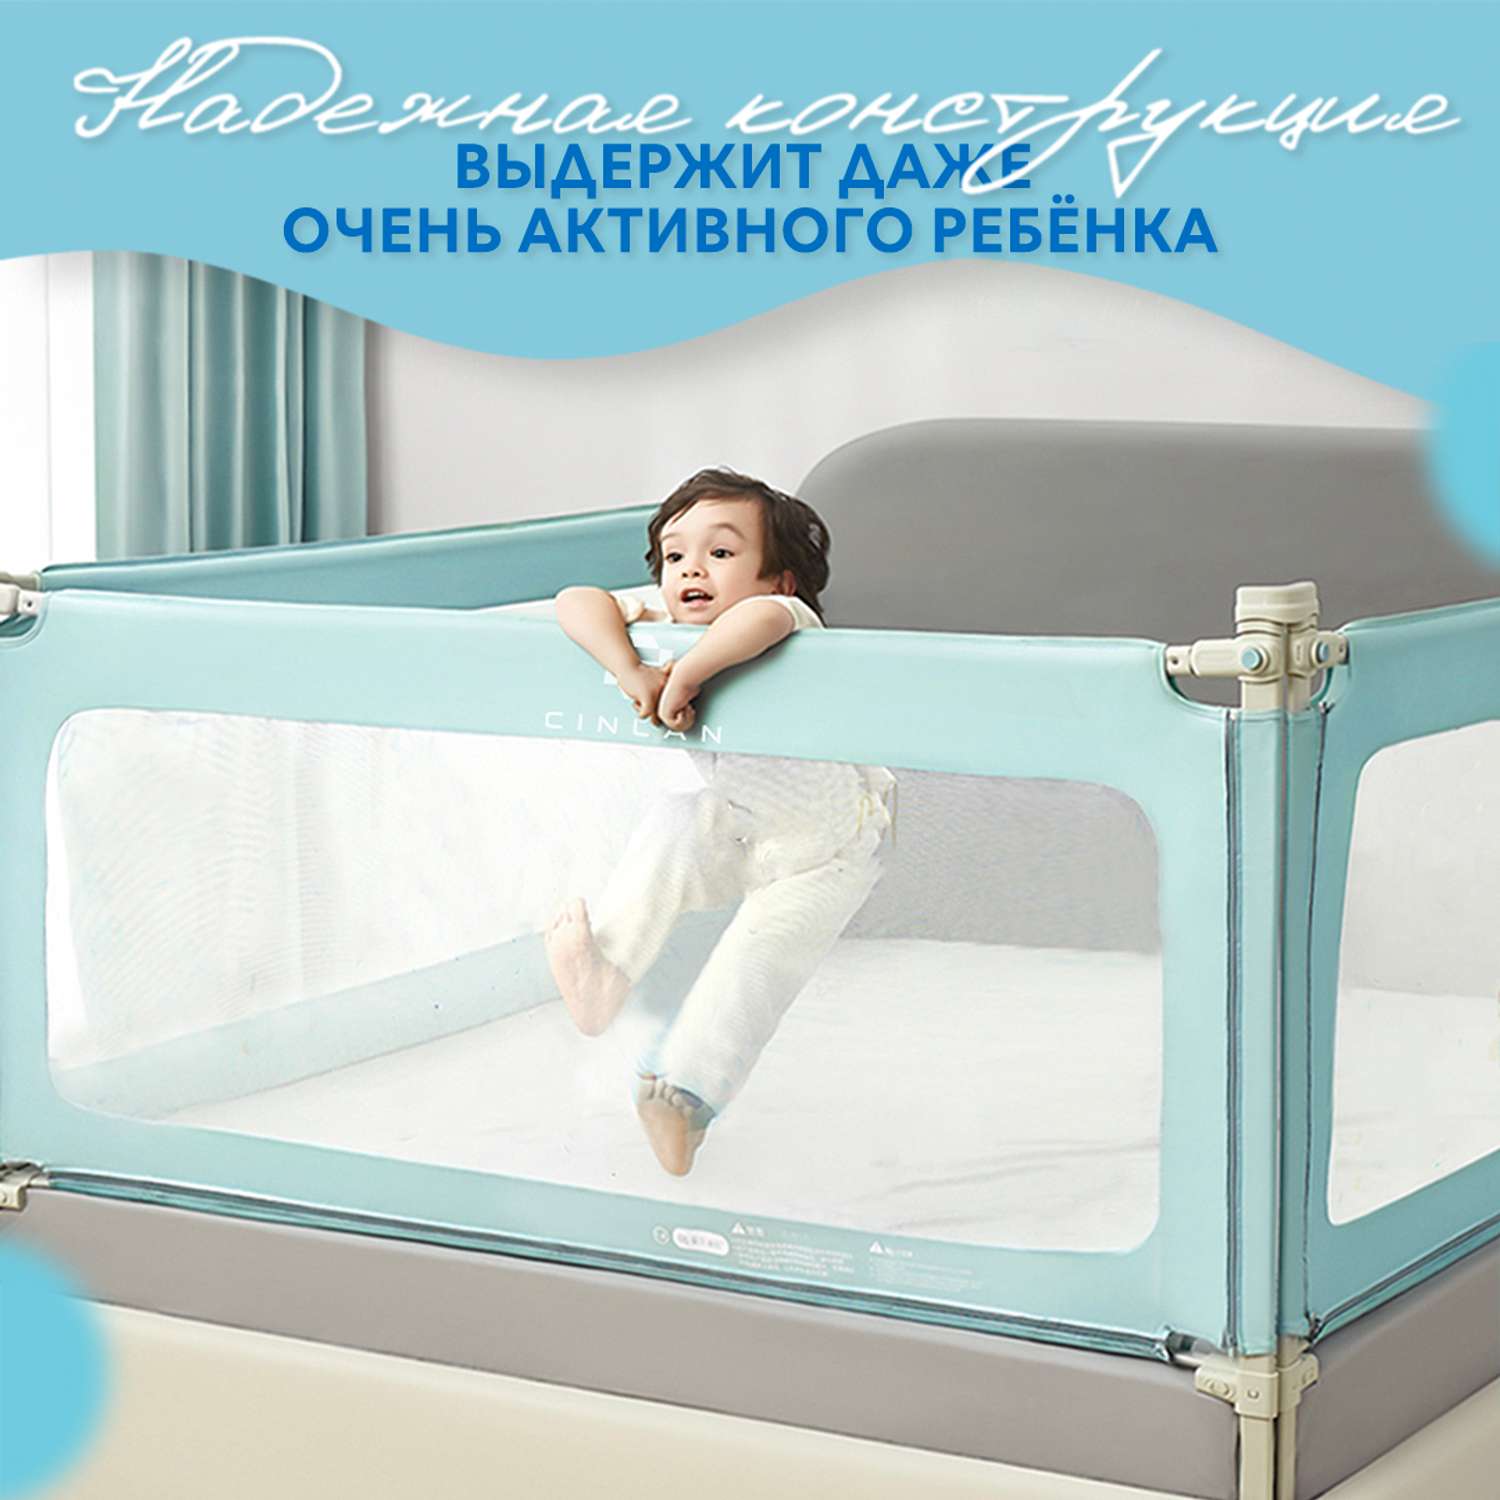 Защитный барьер детский CINLANKIDS для кровати 120 см 1 шт - фото 3